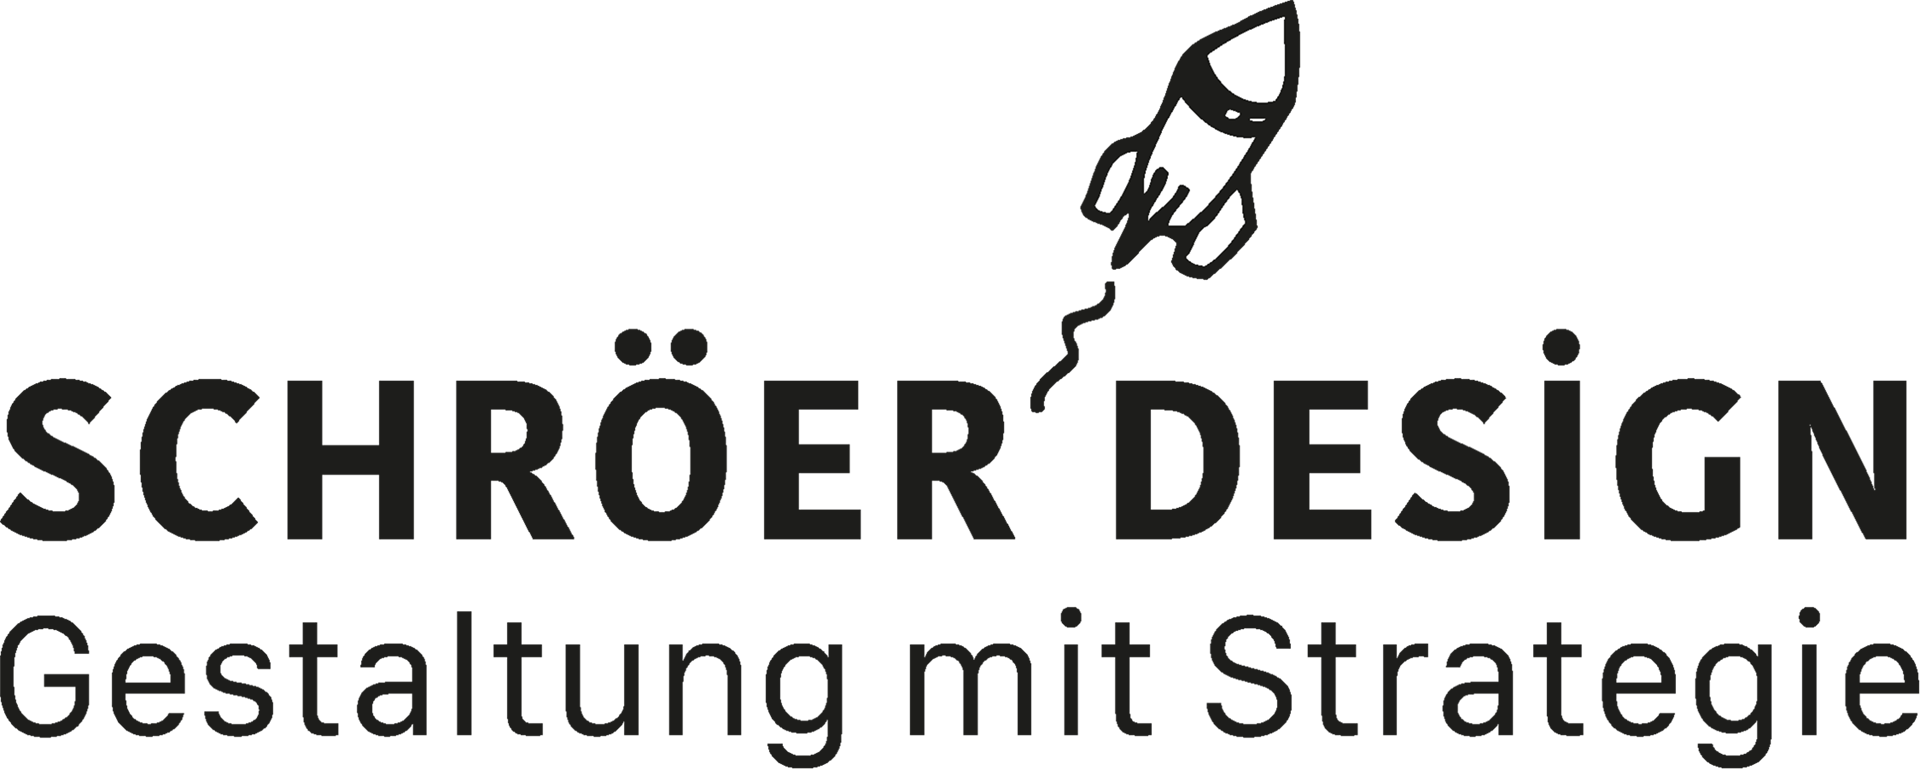 Bild: Schröer Design Gestaltung mit Strategie – Logo mit Rakete